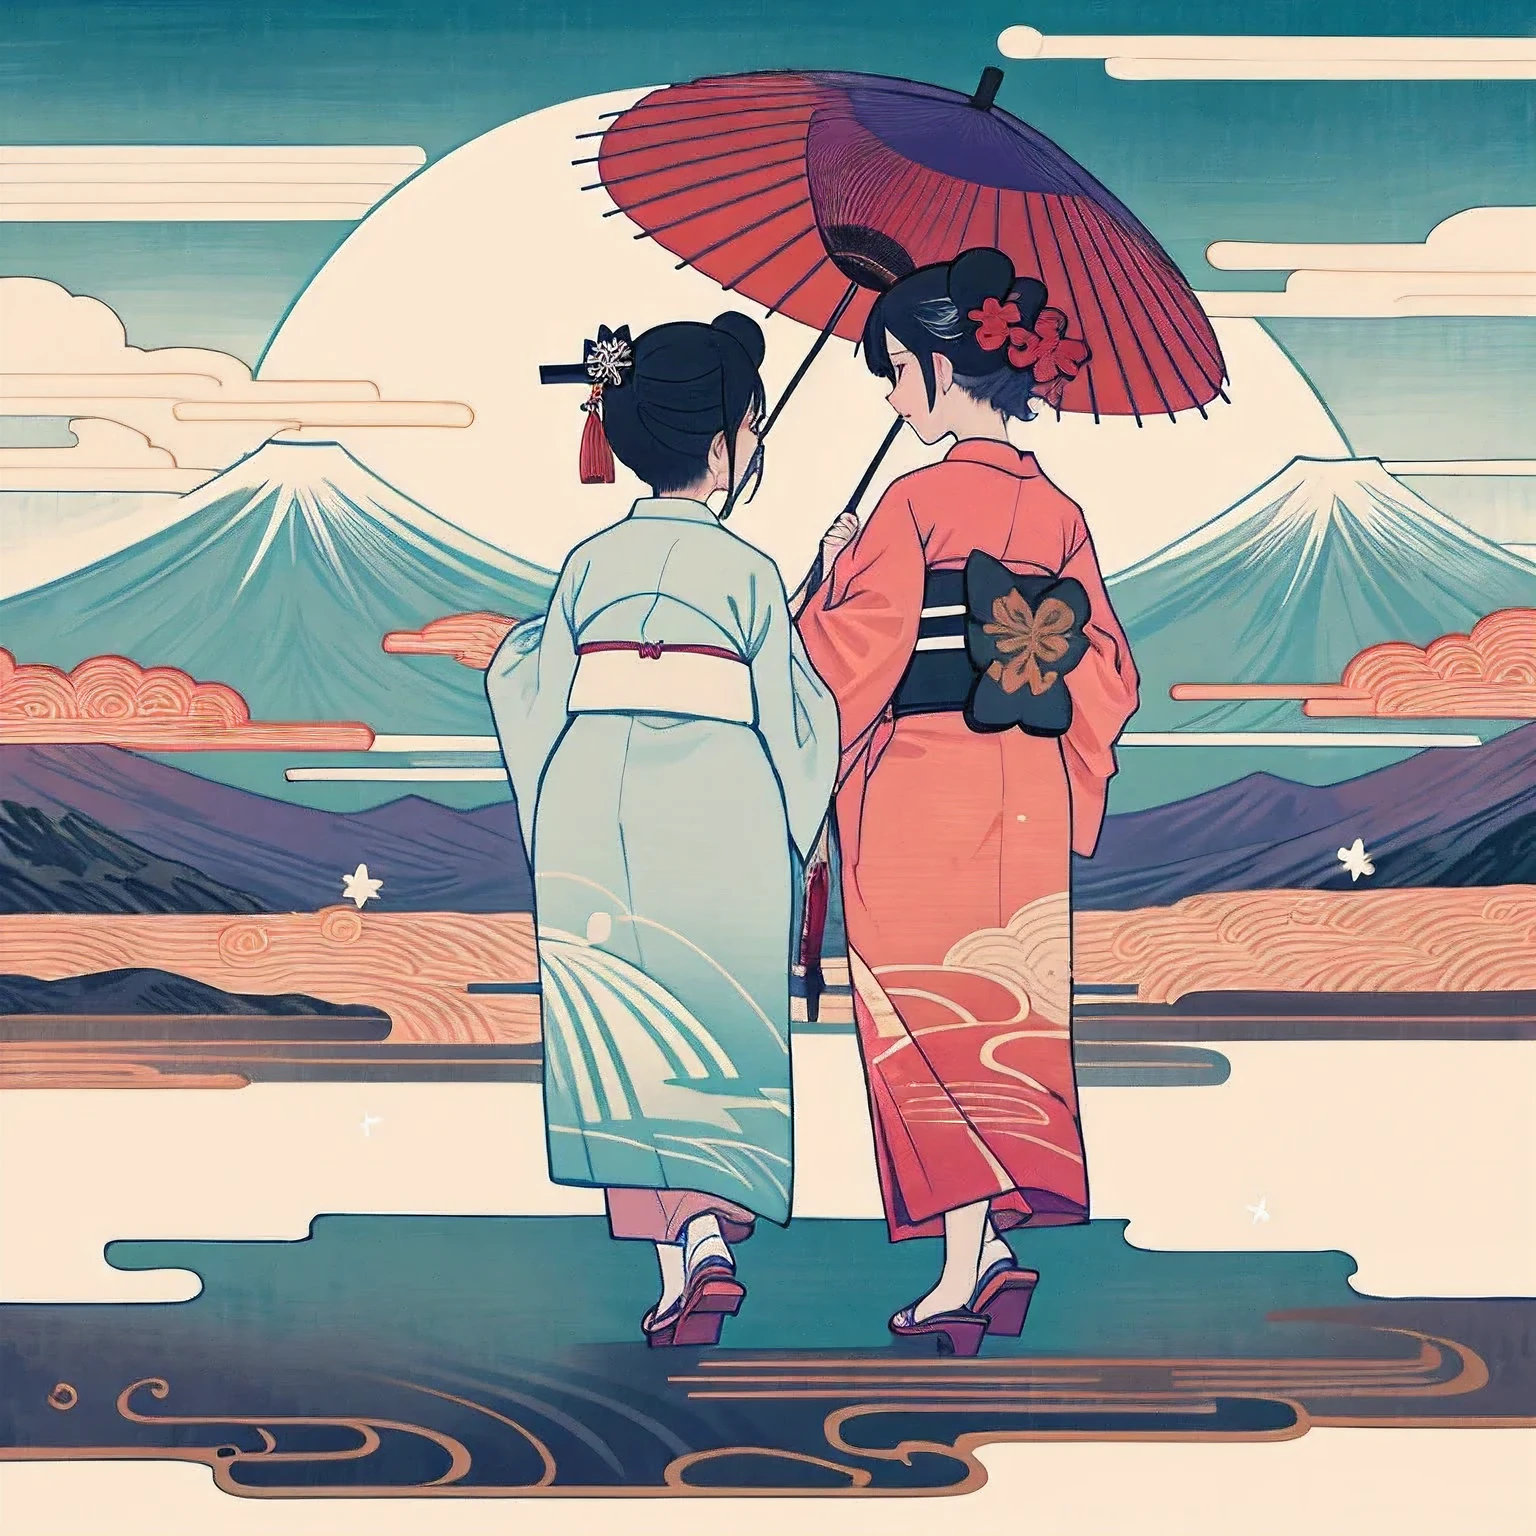 Maiko de Quioto, duas pessoas, vestindo um quimono, duas pessoas並んで立って歩いている, duas pessoas, ambas mulheres, Rosto caiado, vista traseira, Ukiyo-e 1, Ângulo de corpo inteiro, Vestindo geta, Andando com um guarda-chuva japonês, Quimono roxo e branco＆vestindo um quimono vermelho e branco, O grande Monte Fuji está ao fundo., Atmosfera brilhante e fantástica